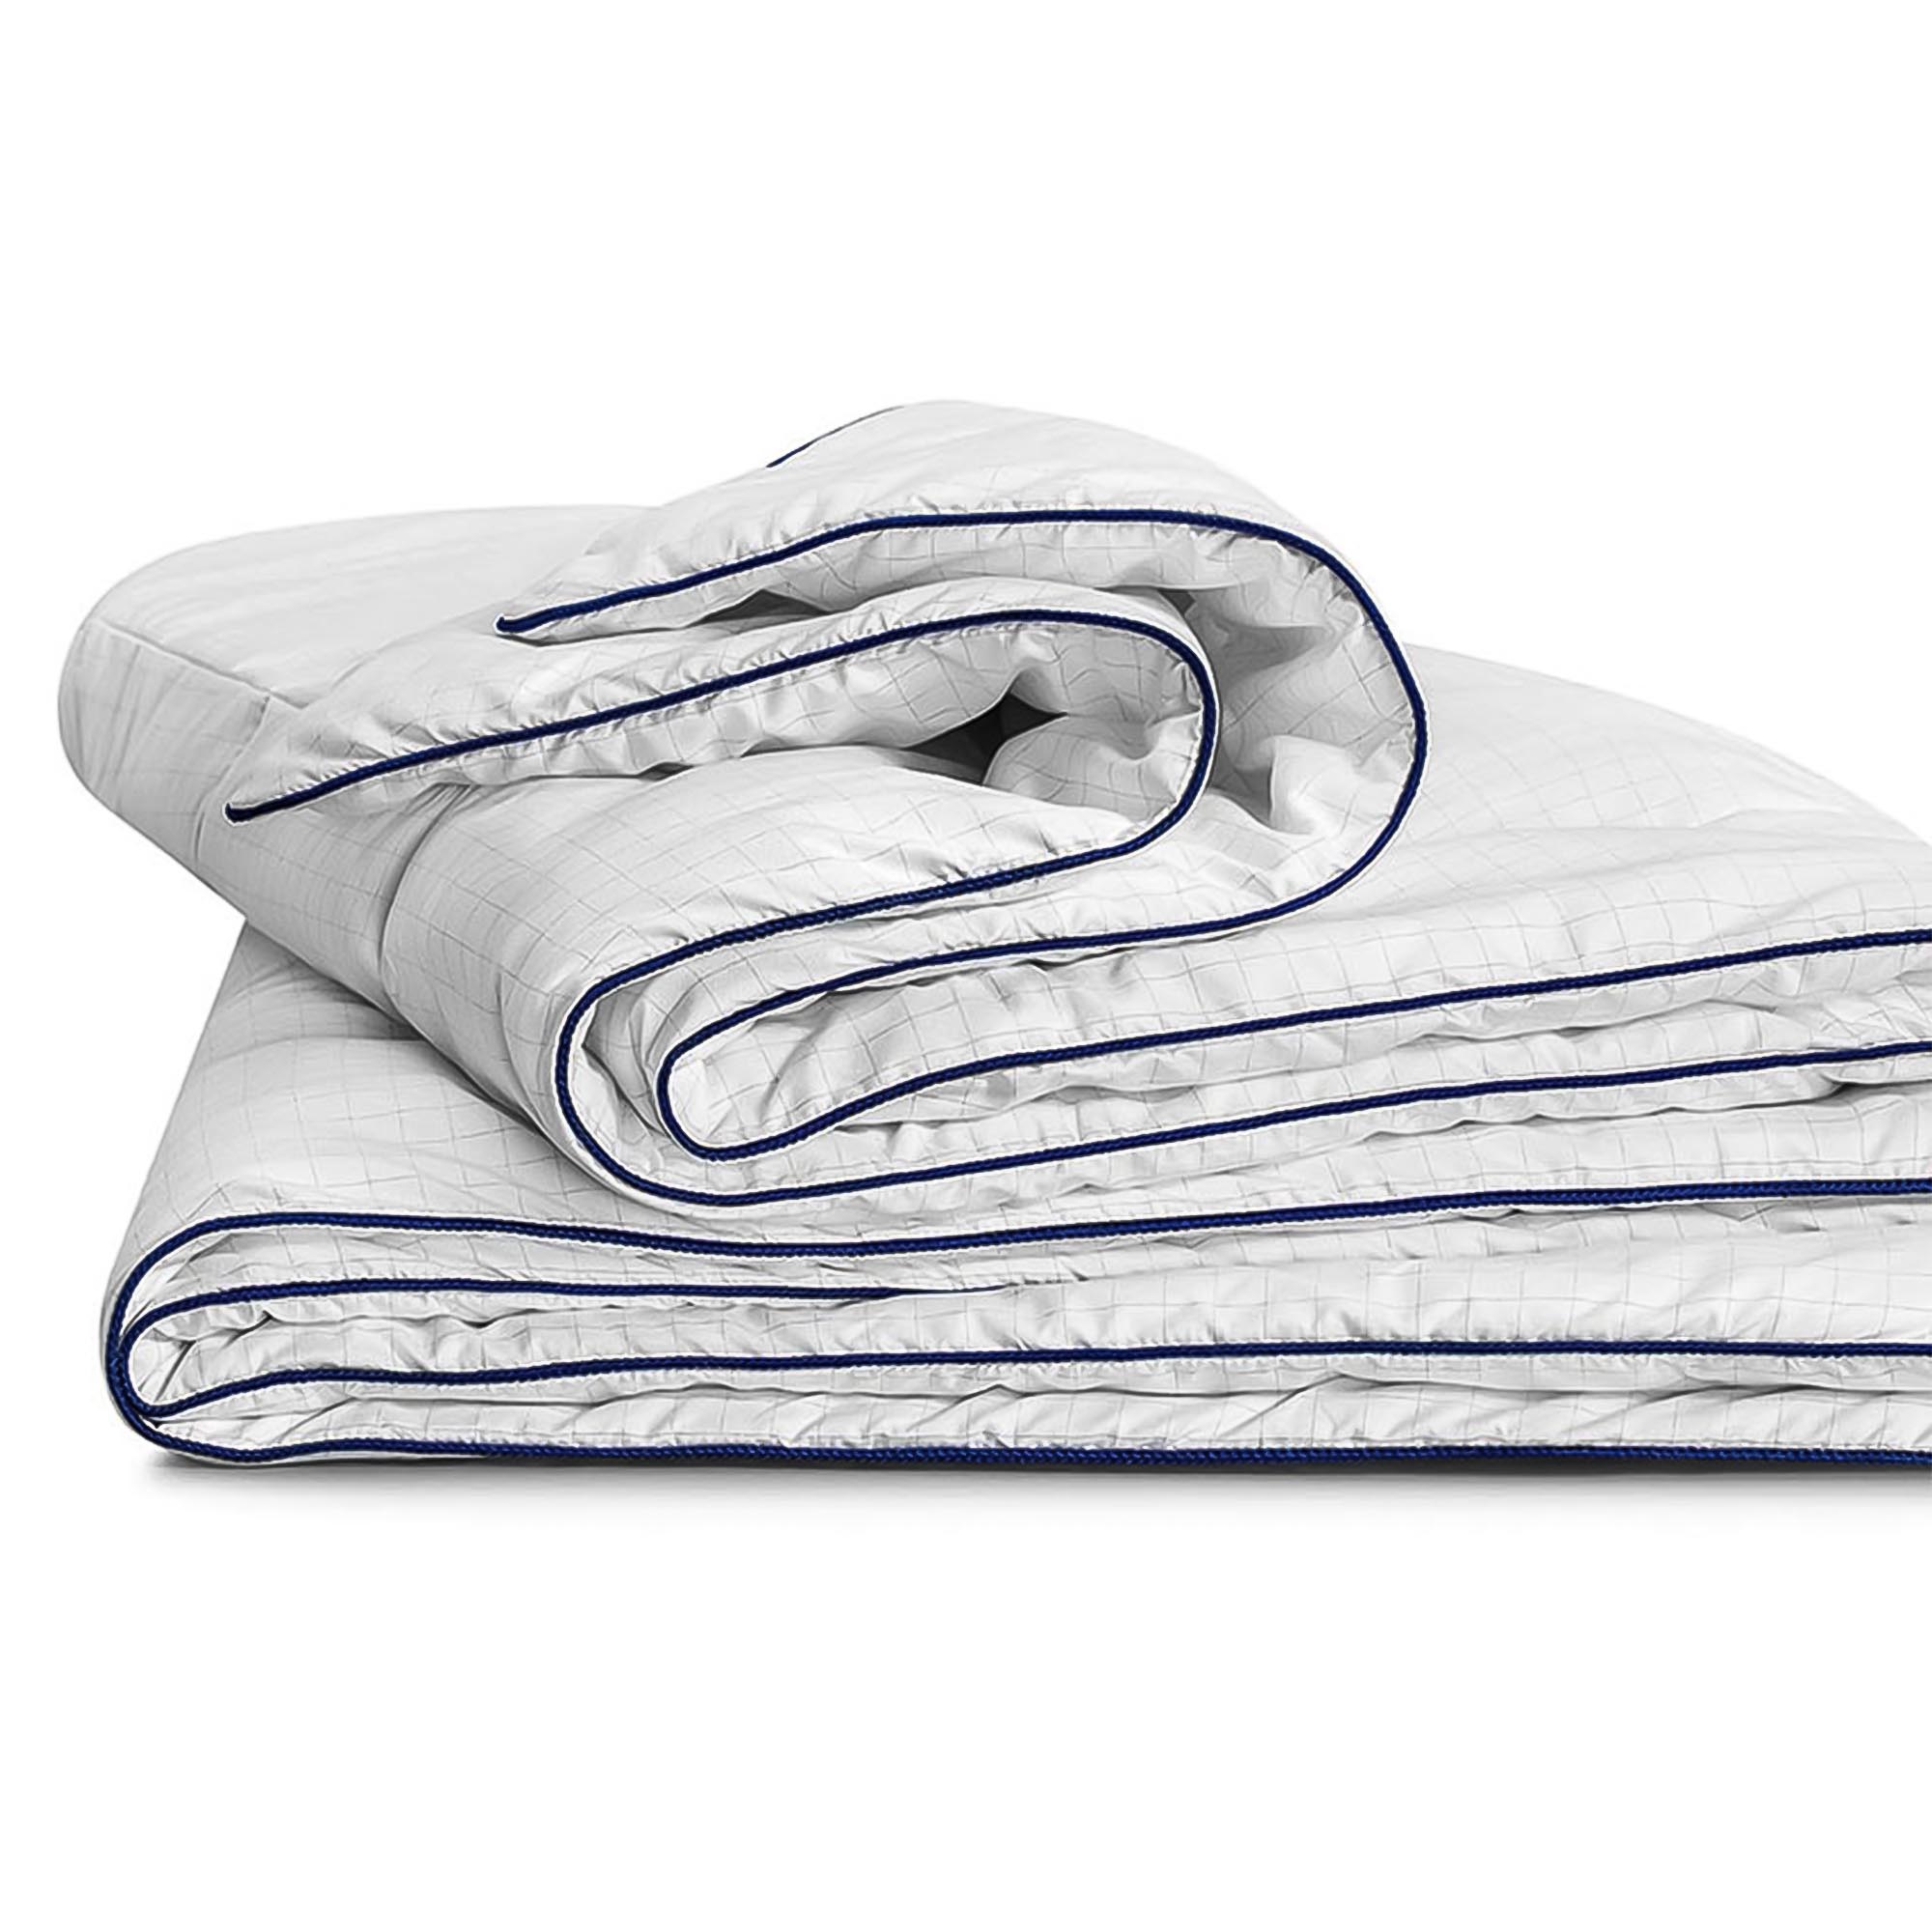 Одеяло Medsleep Nubi белое 175х200 см, цвет белый - фото 3